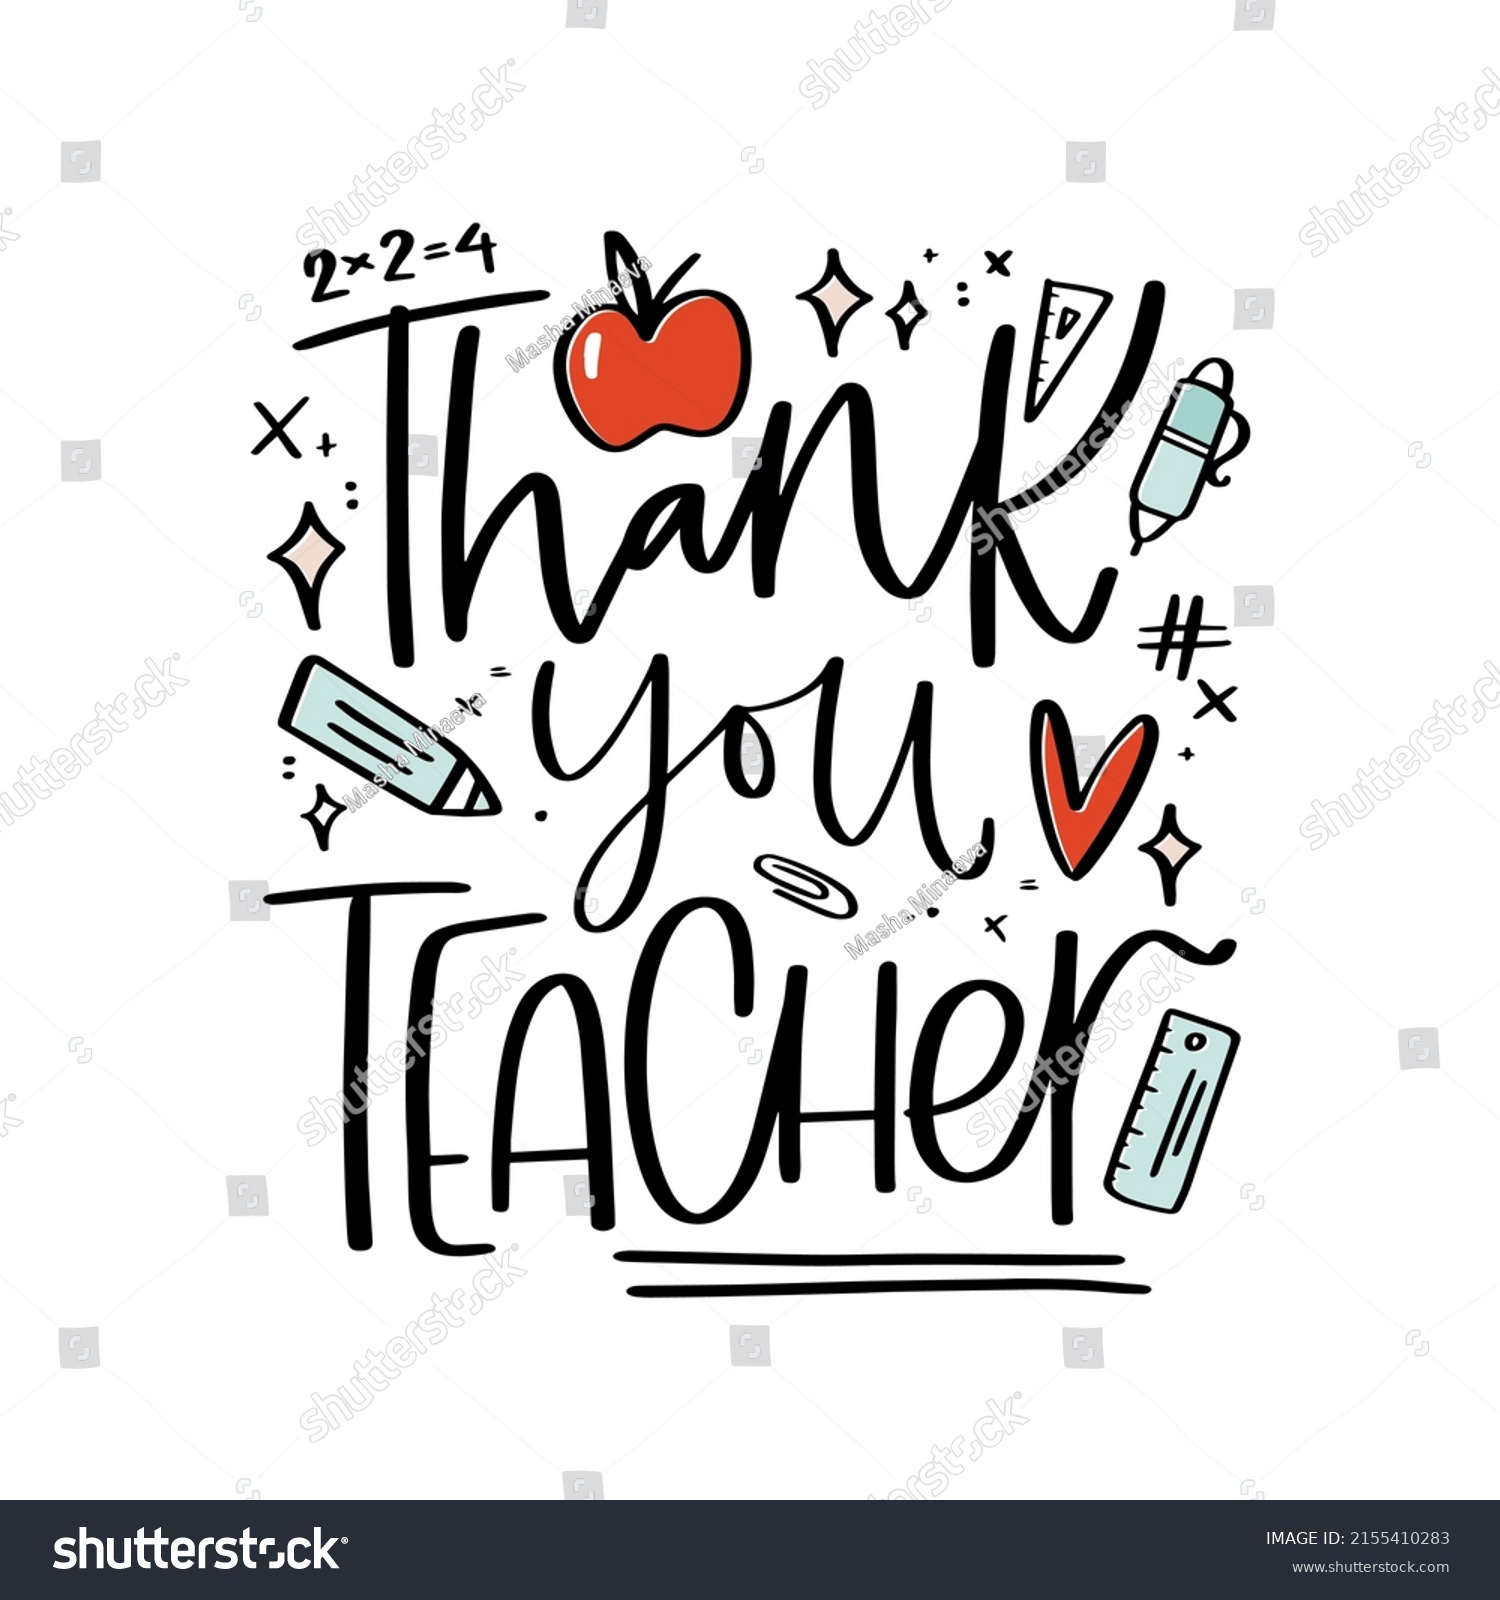 Teacher Appreciation Card Design Thank You Stock Vector (Royalty Free ...